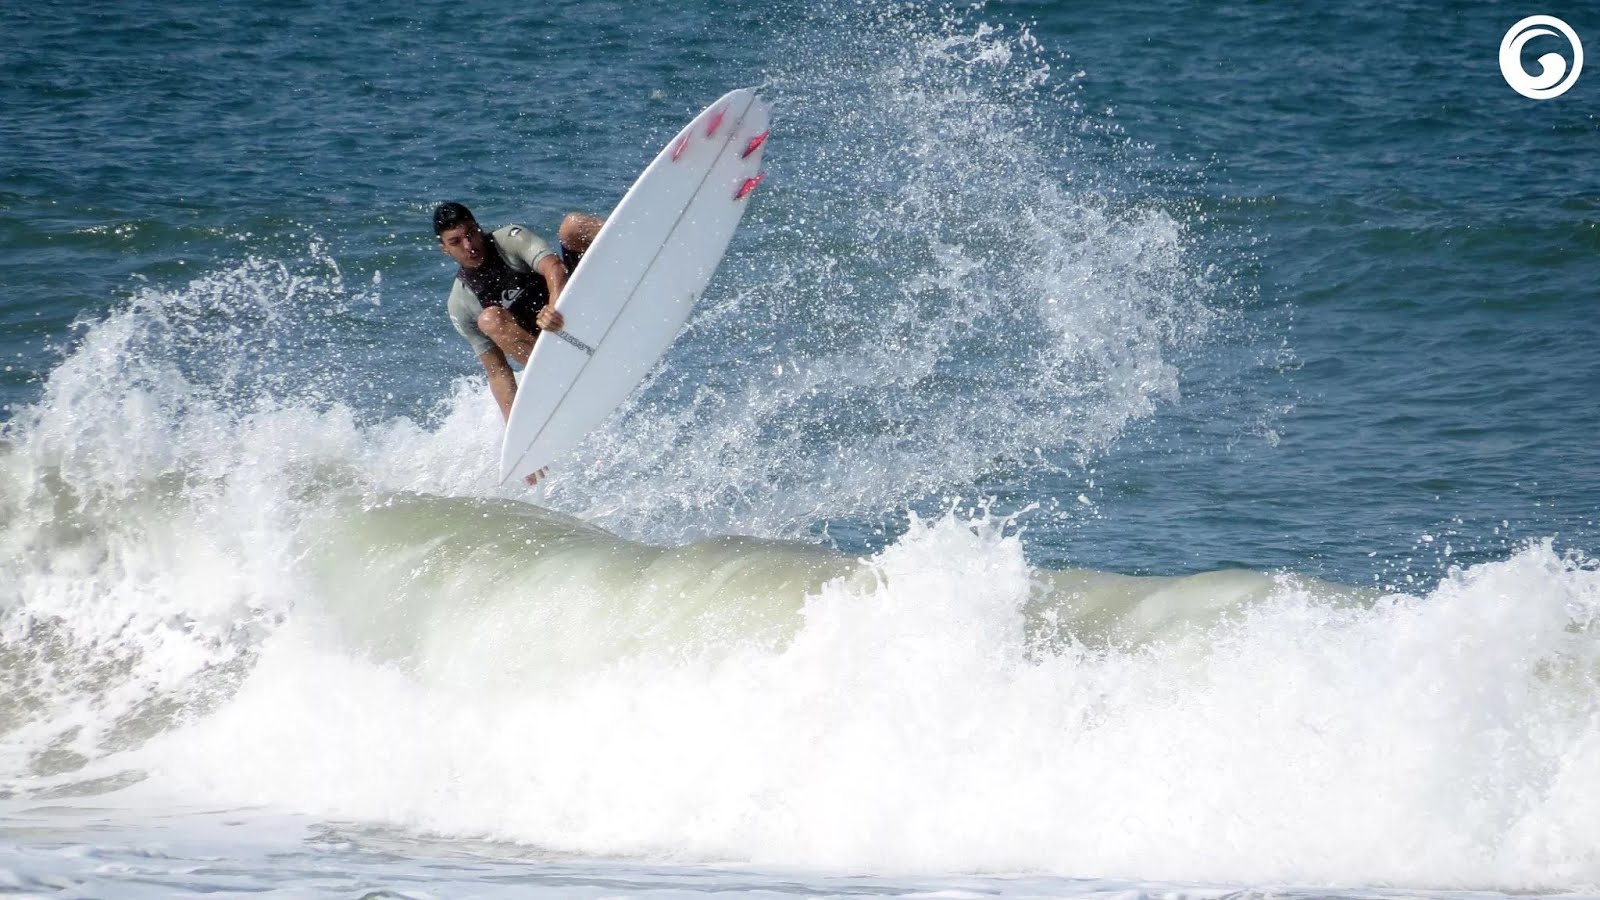 rodrigo vieira free surfer